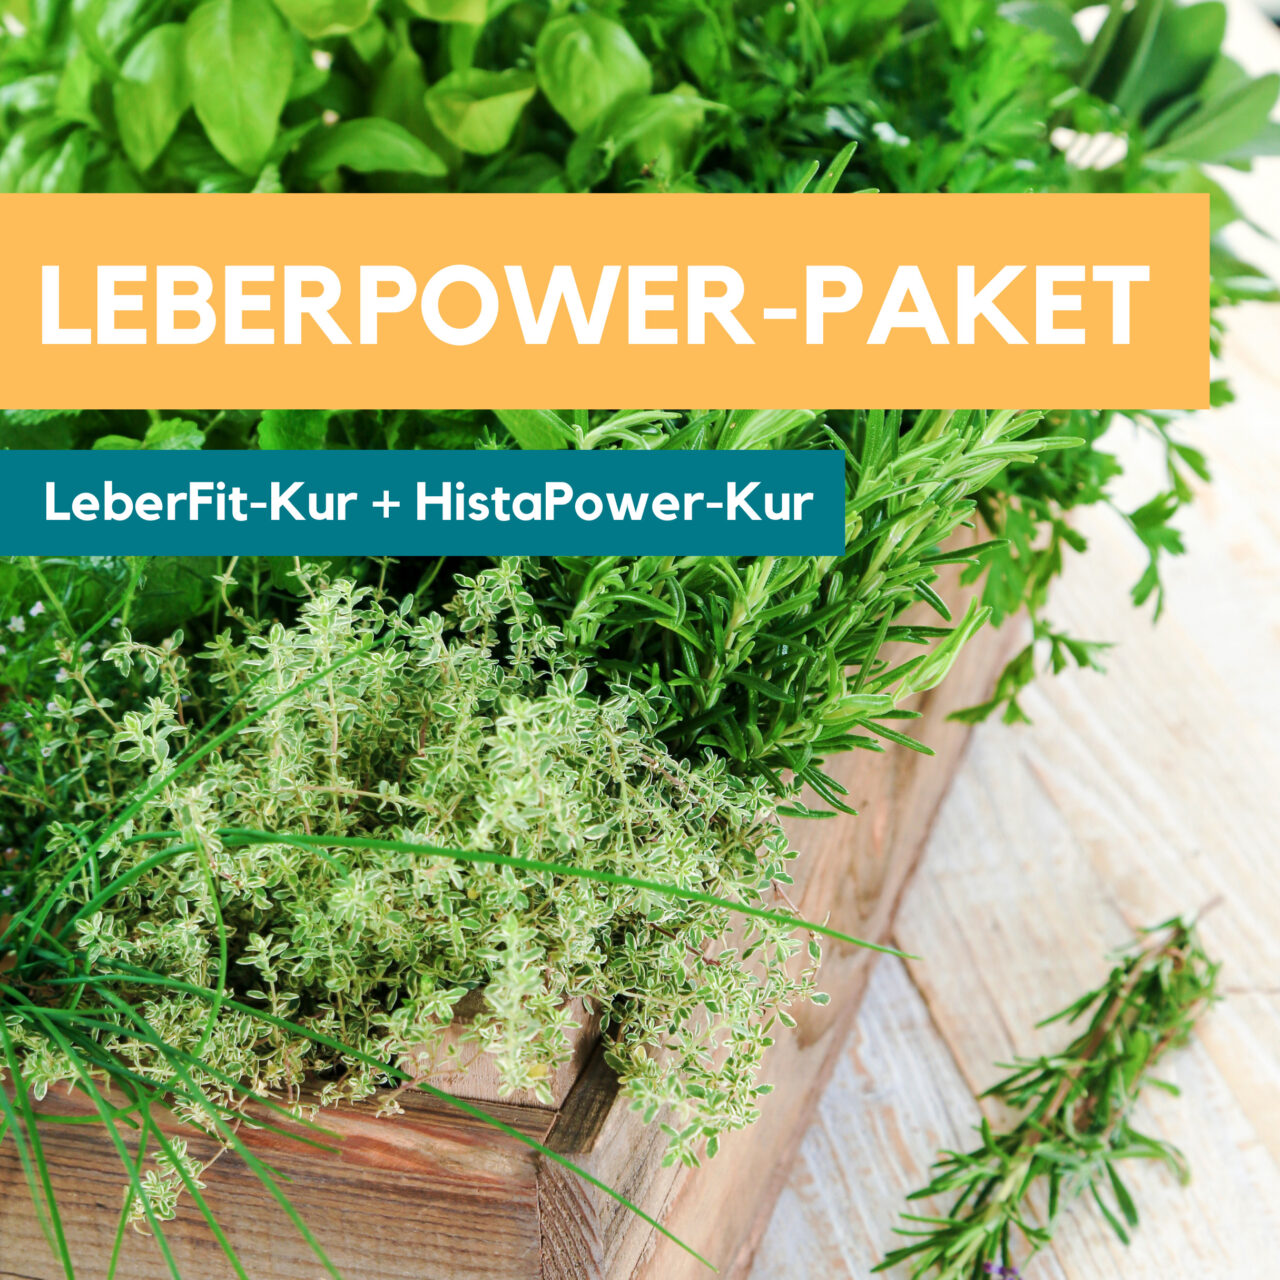 LeberPower-Paket Histamin